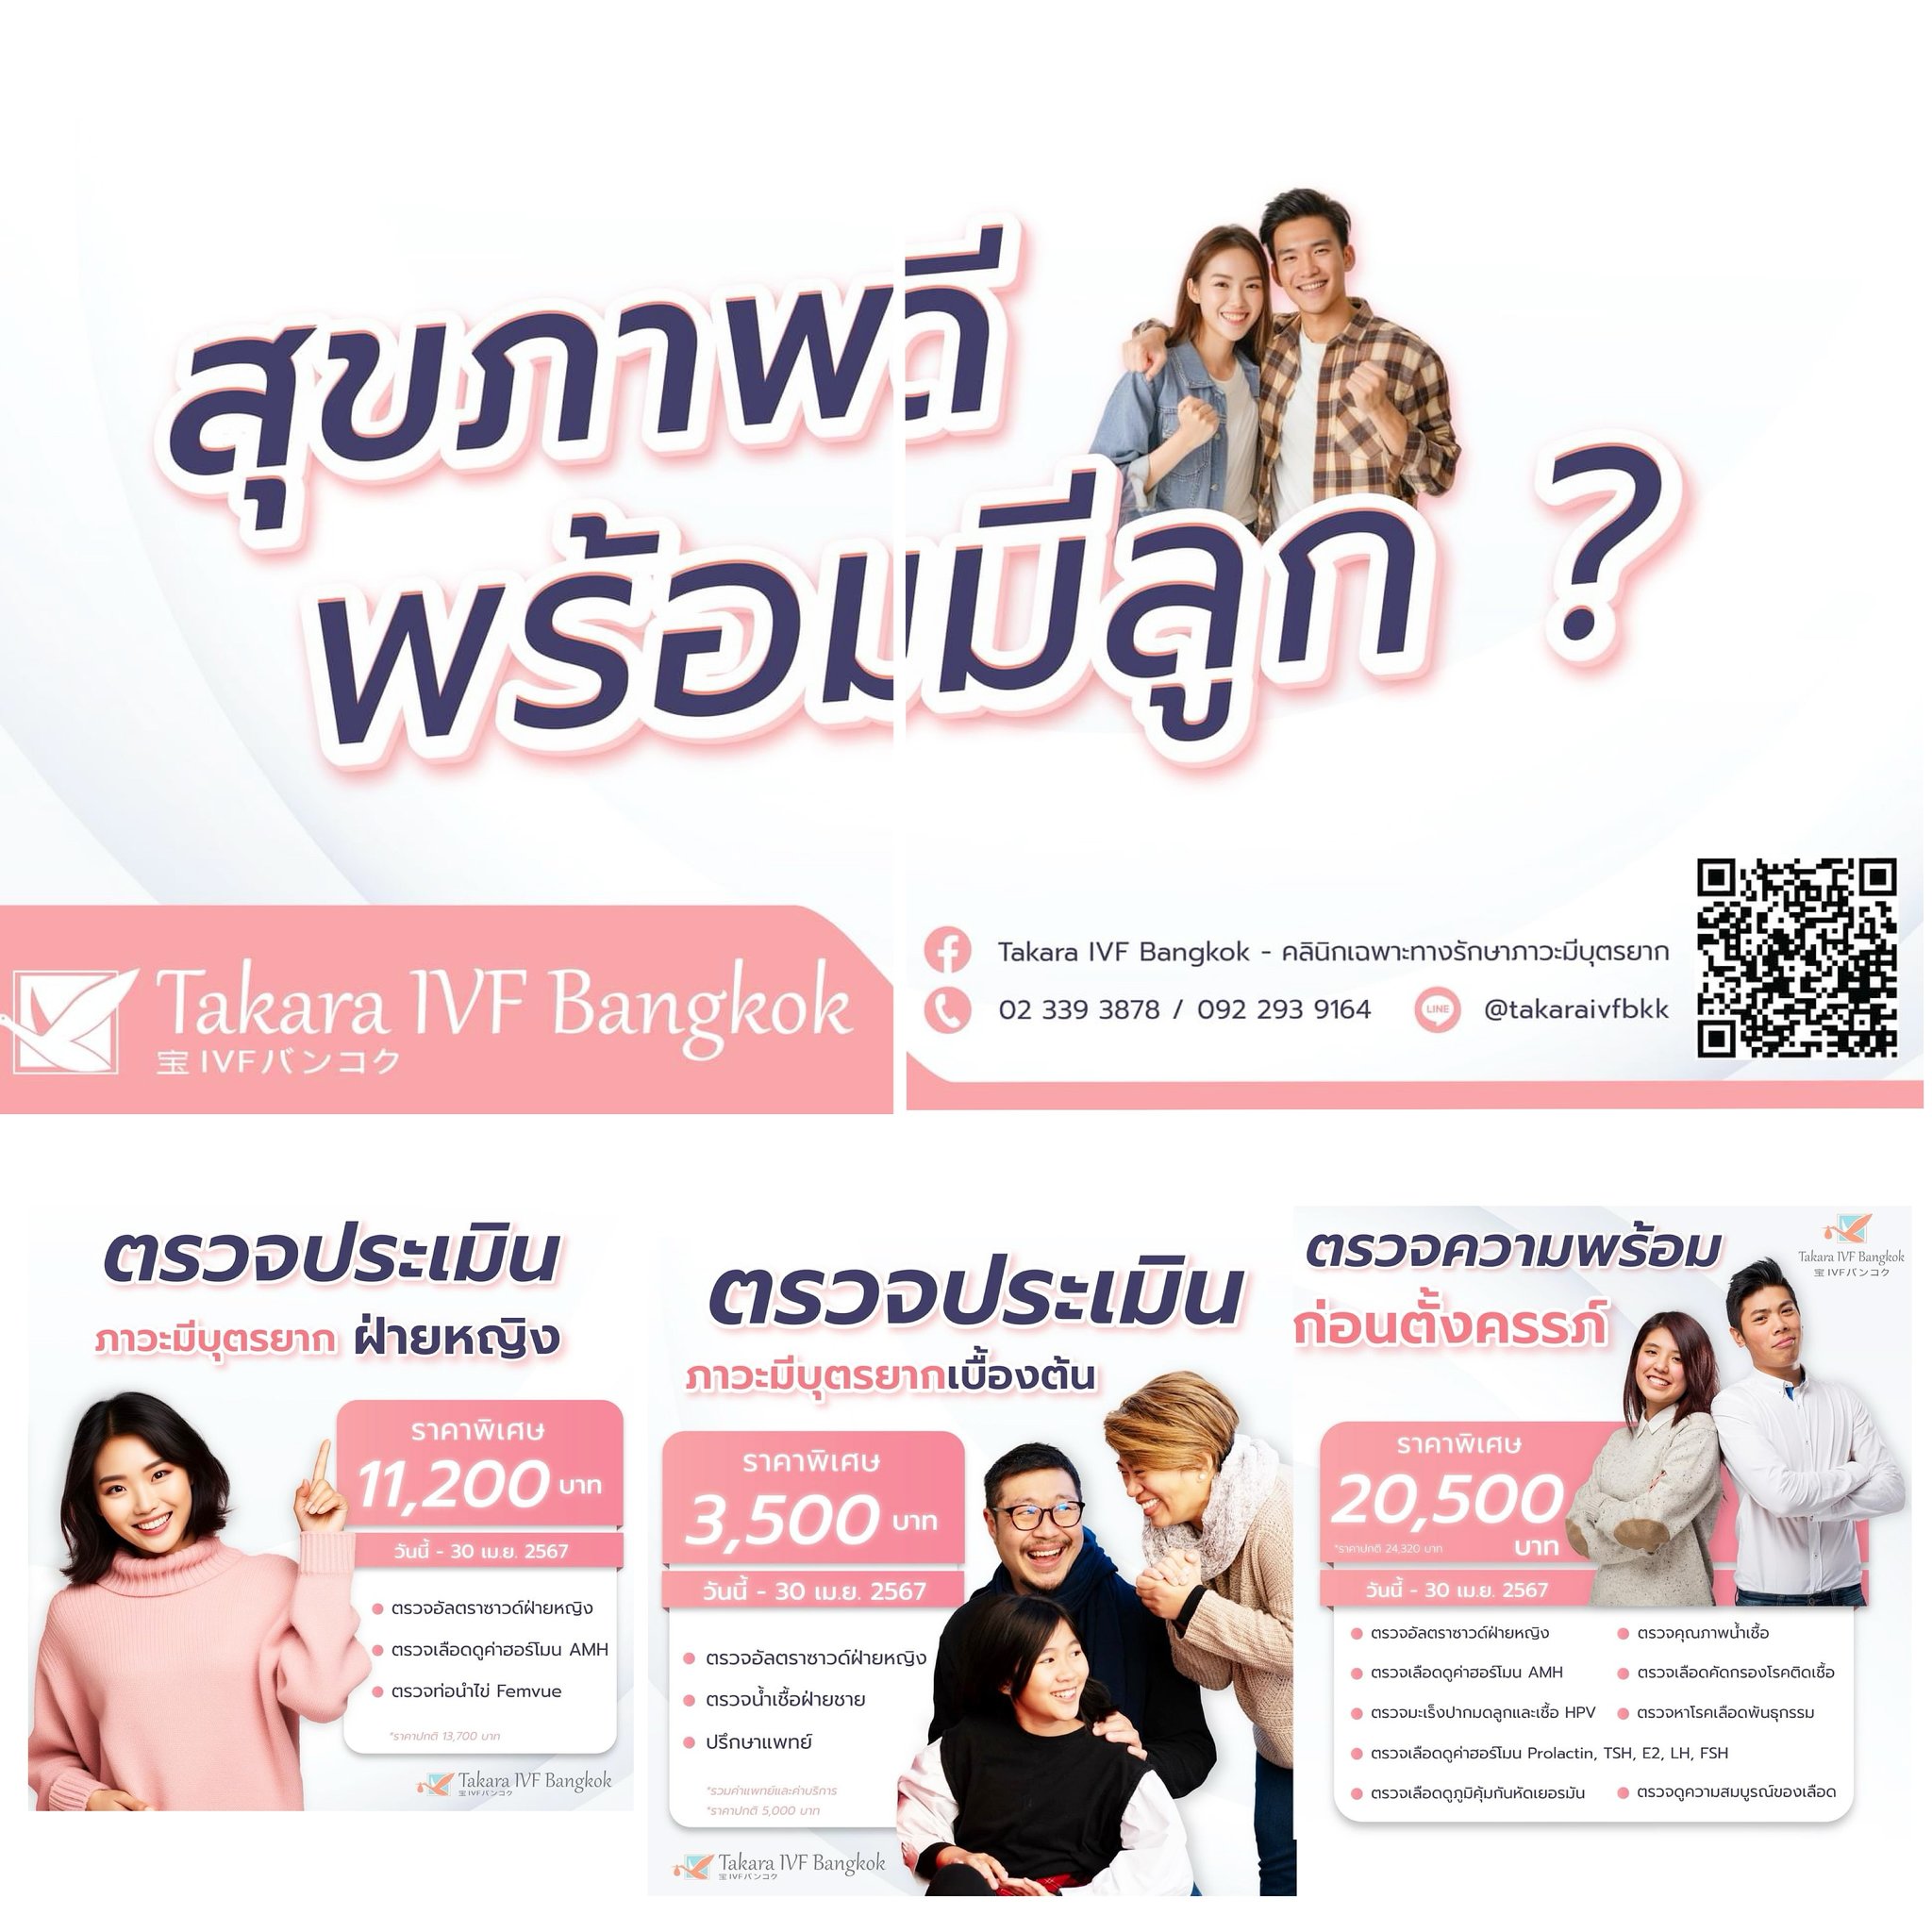 โปรโมชั่นพิเศษ เตรียมความพร้อมก่อนตั้งครรภ์ที่ Takara IVF Bangkok